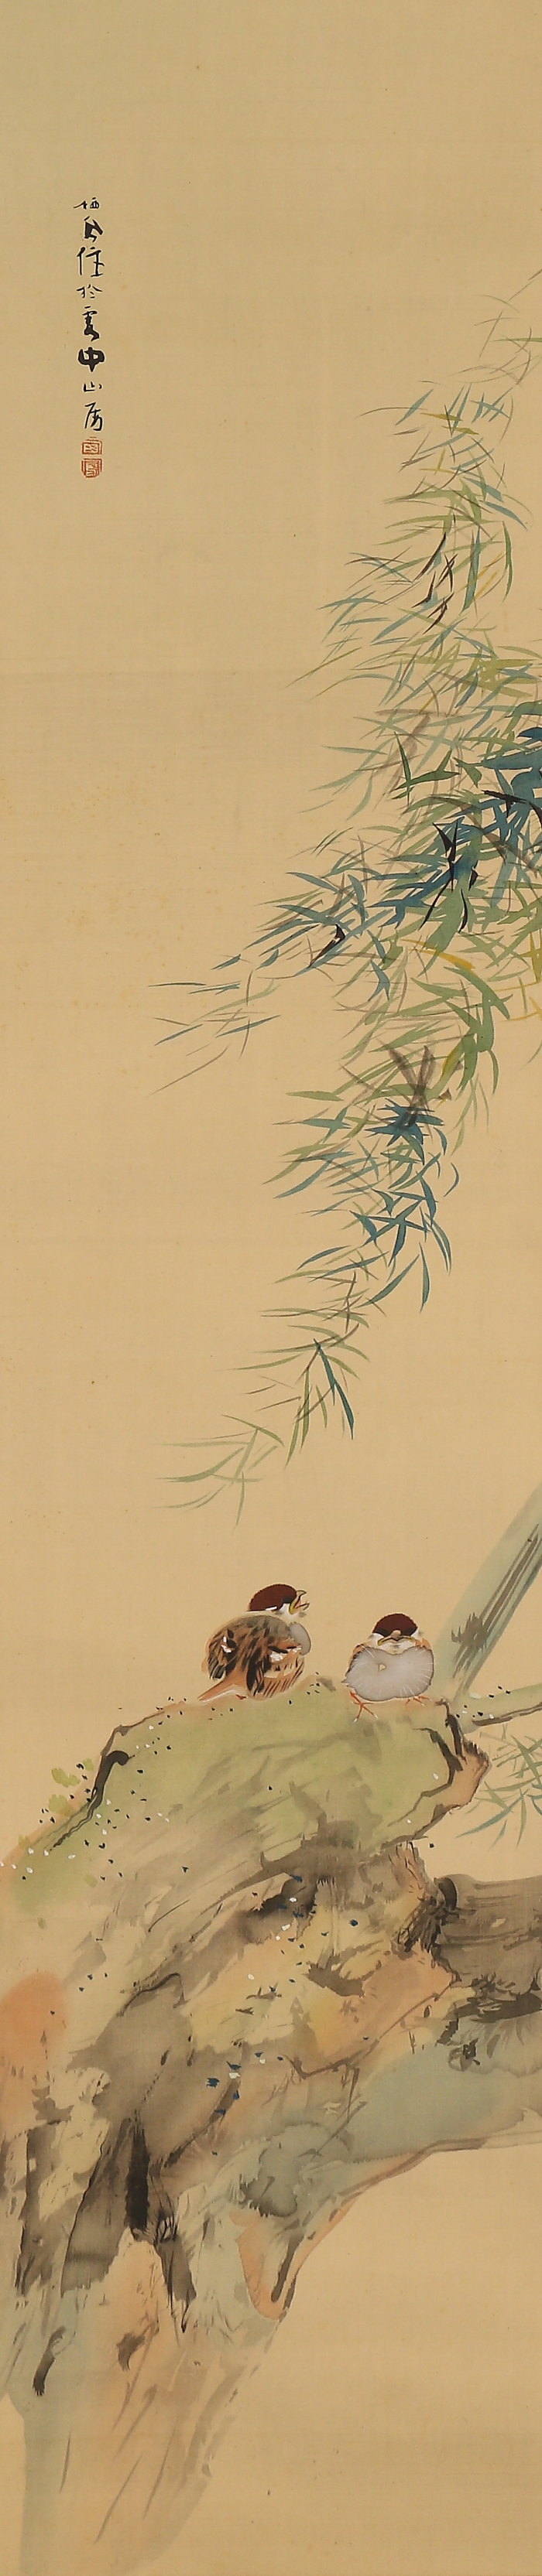 【伝来】a2855〈竹内栖鳳〉雀図 工芸印刷 近代日本画の先駆者